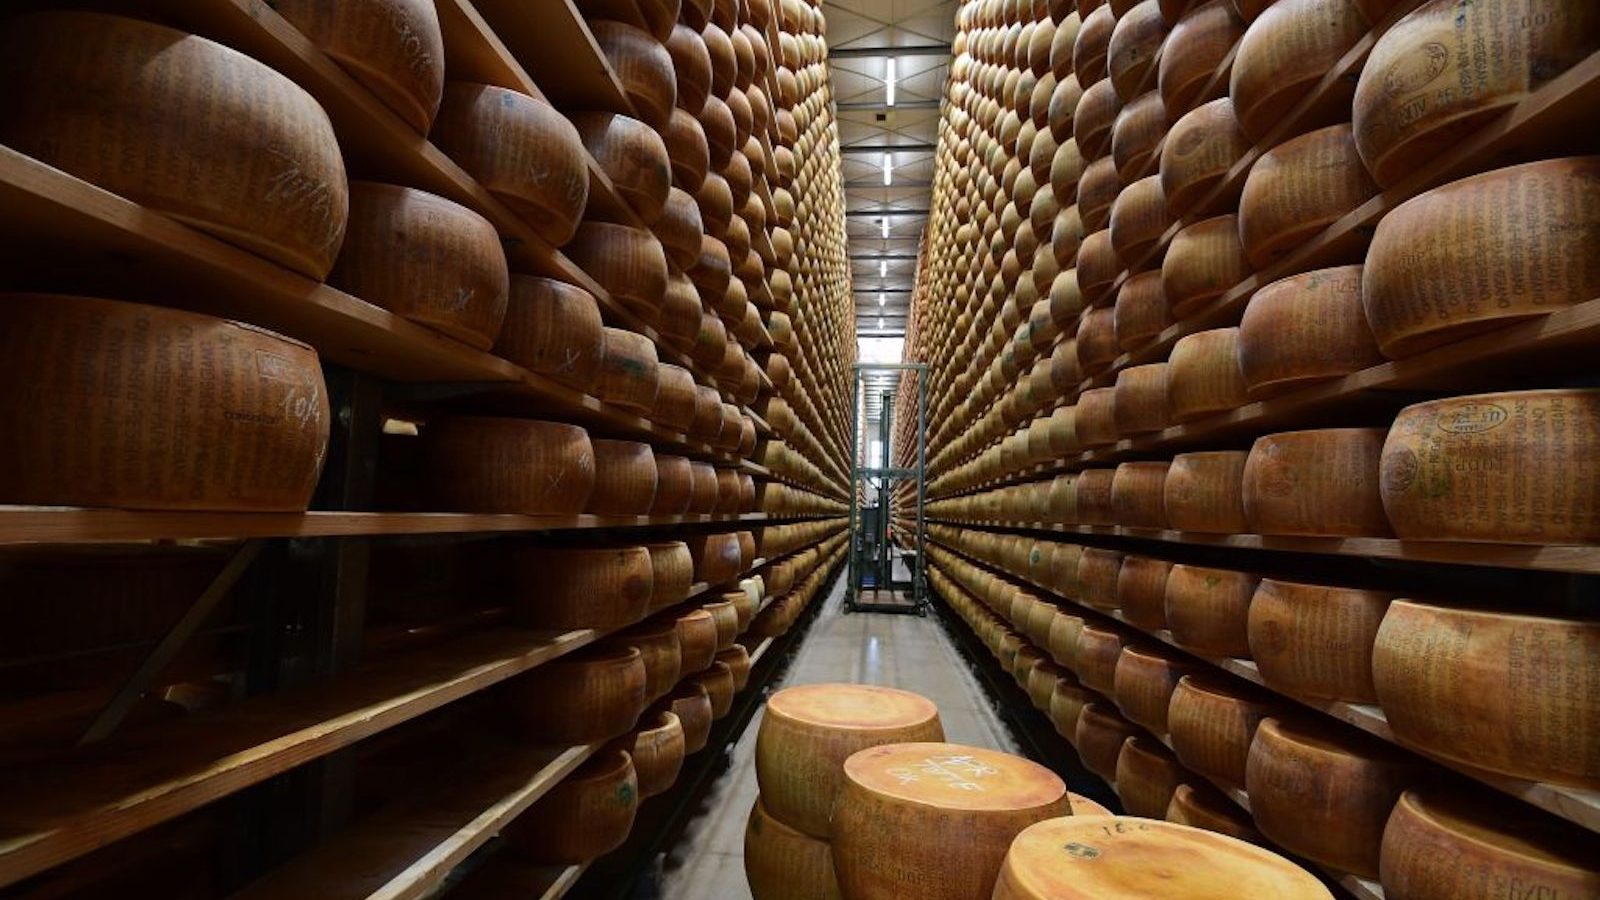 Un casaro italiano morì dopo essere stato schiacciato da 16.000 pezzi di formaggio a pasta dura